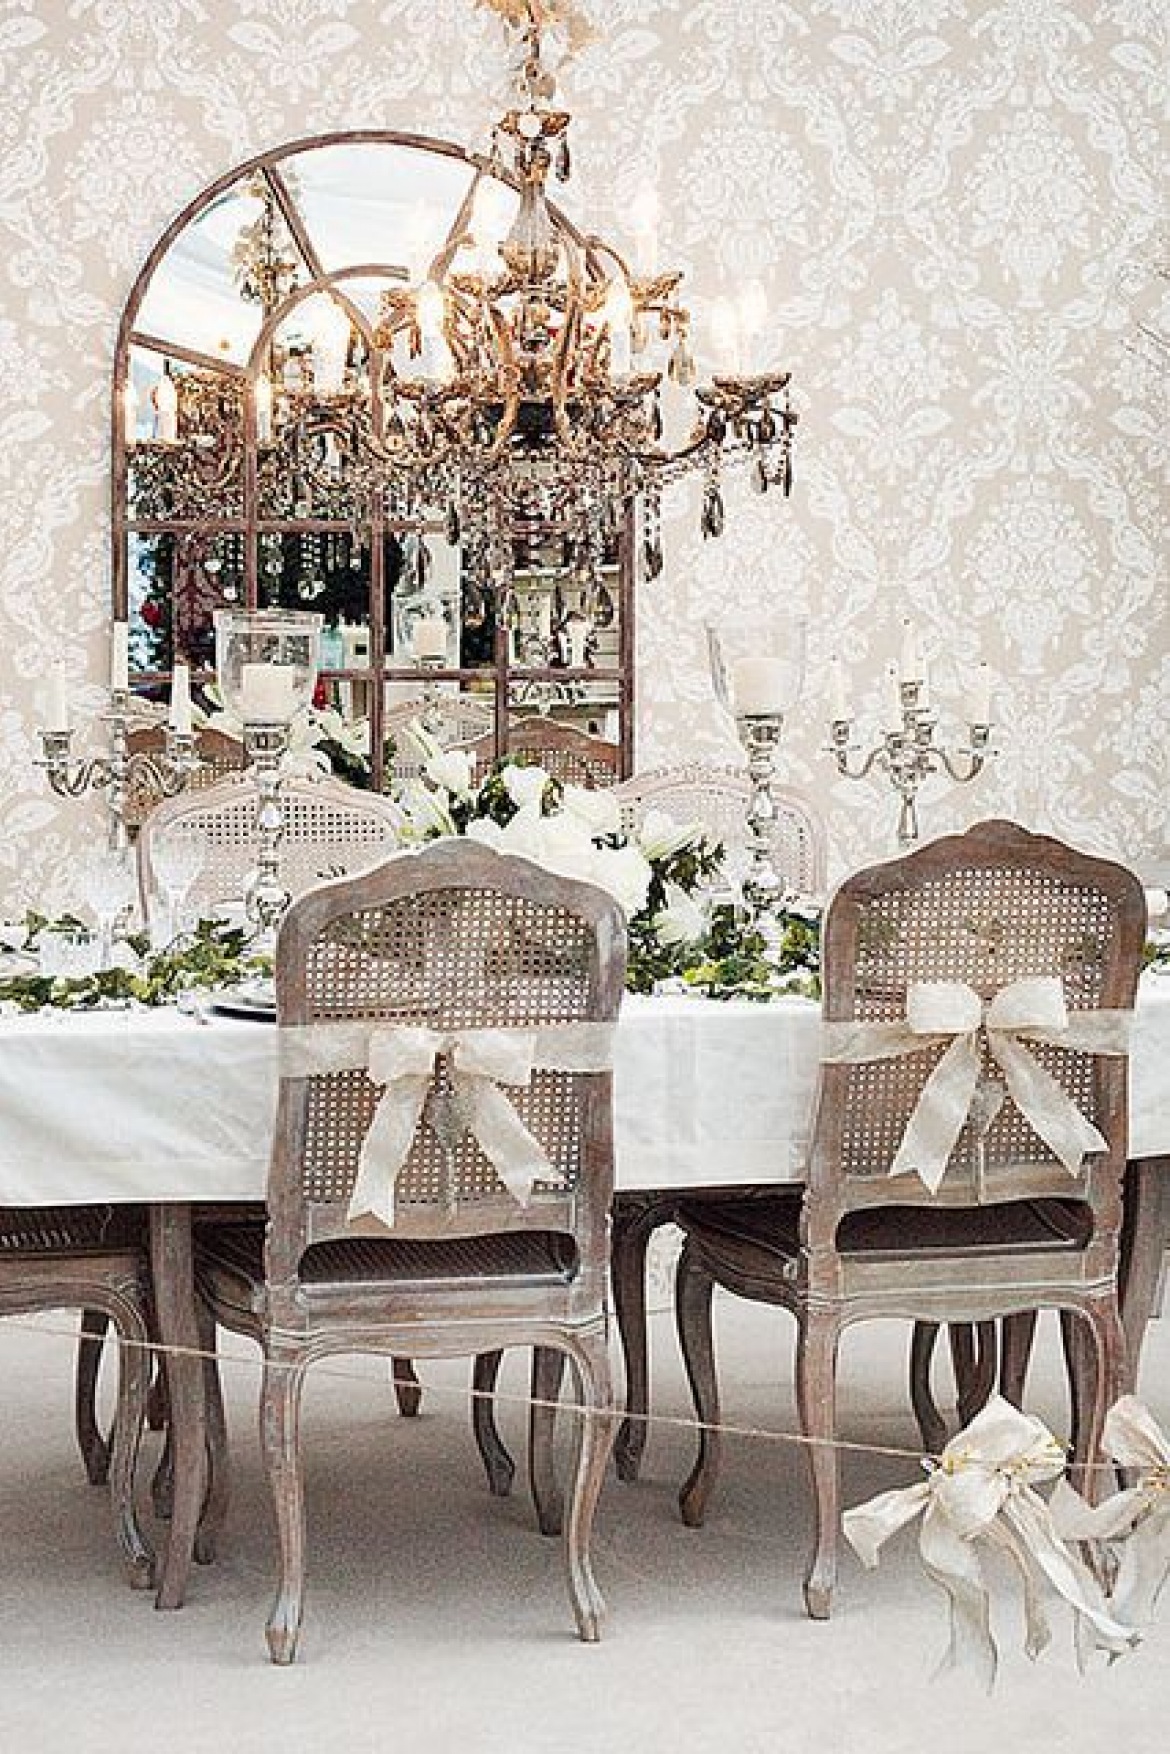 Prowansalski żyrandol z paciorkami,francuskie ozdobne świeczniki na światecznym stole,francuskie dzielone lustro i prowansalskie krzesła bielone z rattanowymi oparciami przewiązanymi białymi wstążkami (27434)